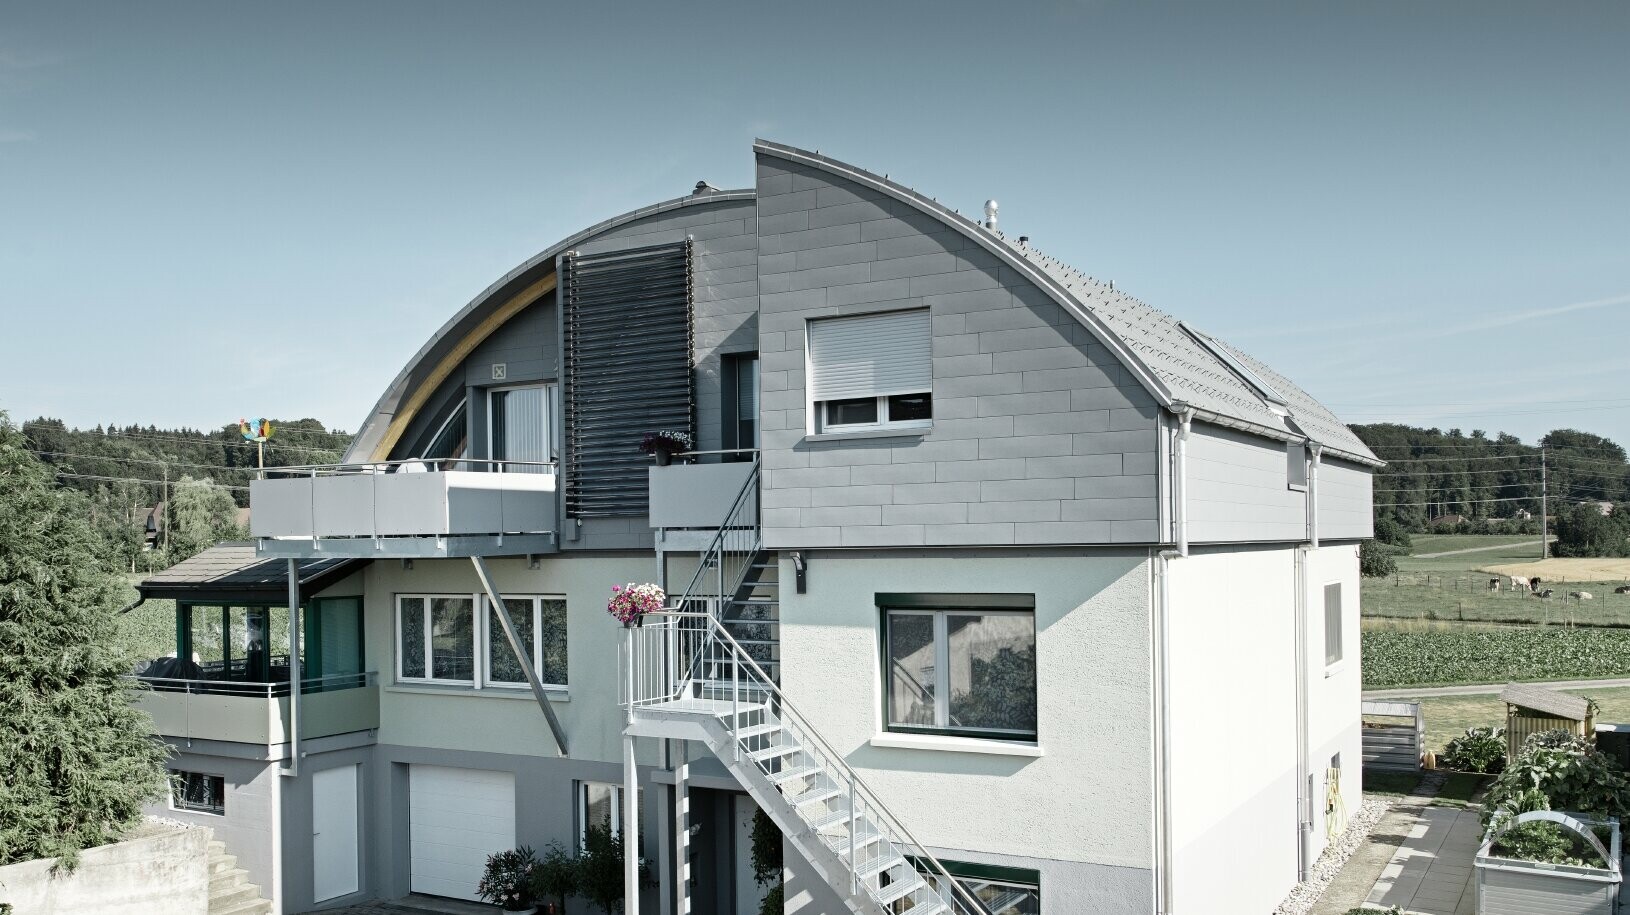 Einfamilienhaus mit PREFA Siding in patina grau und Dachplatte in hellgrau